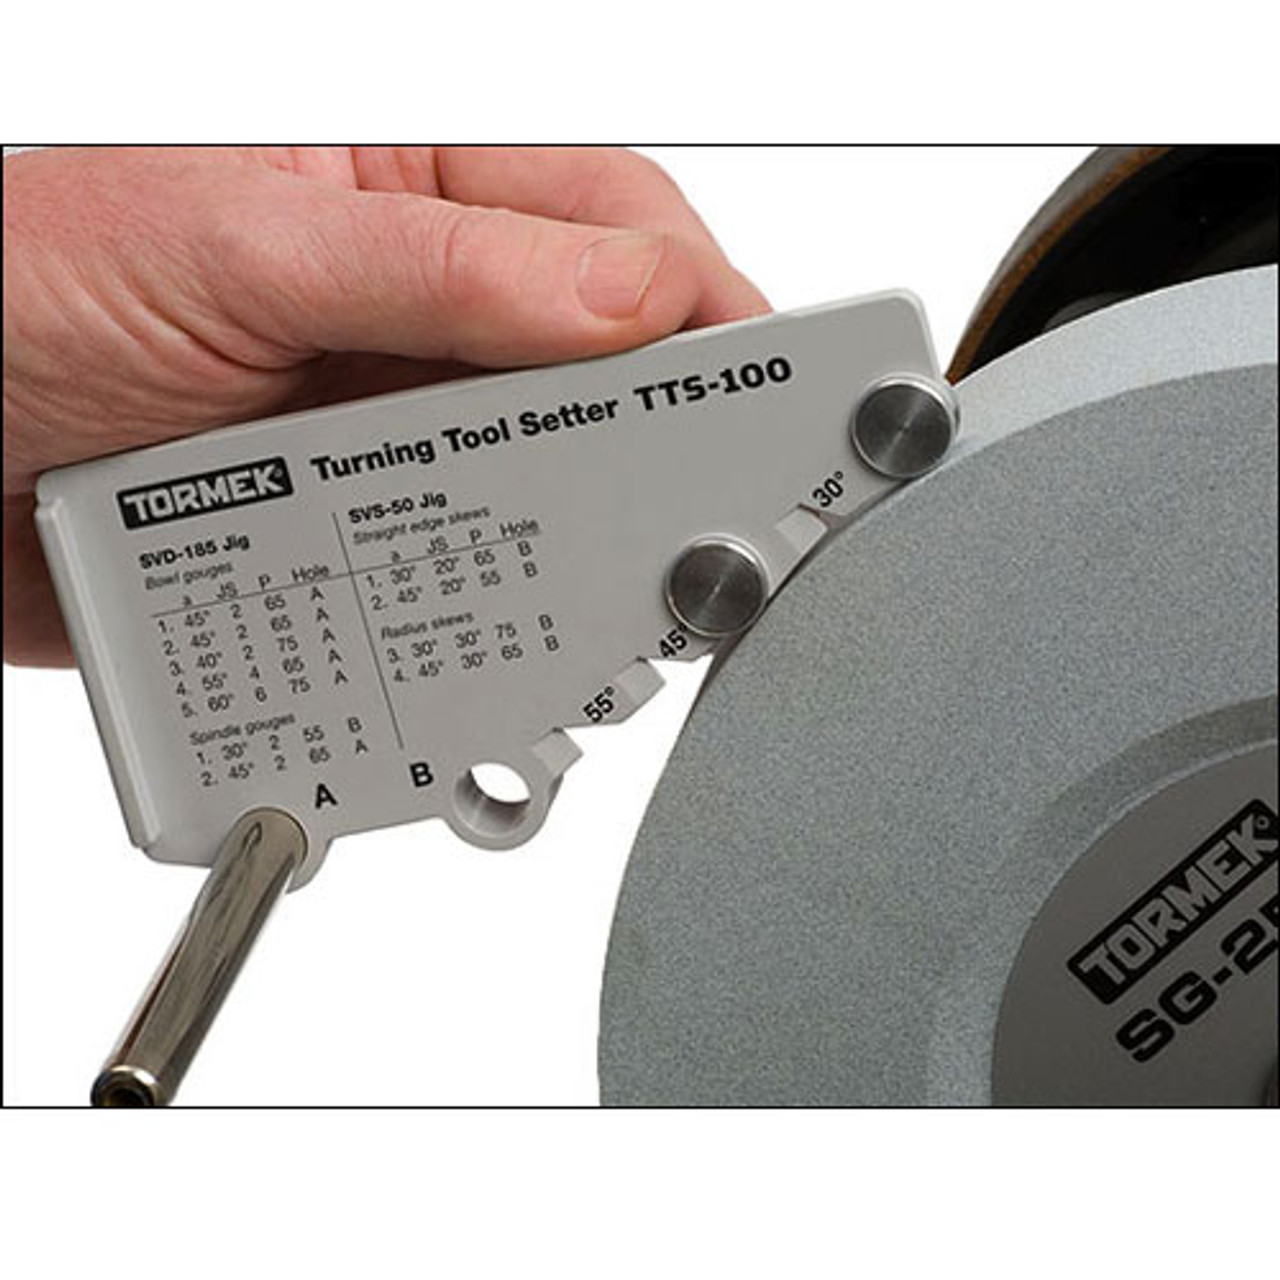 Tormek Turning Tool Setter (TTS-100)